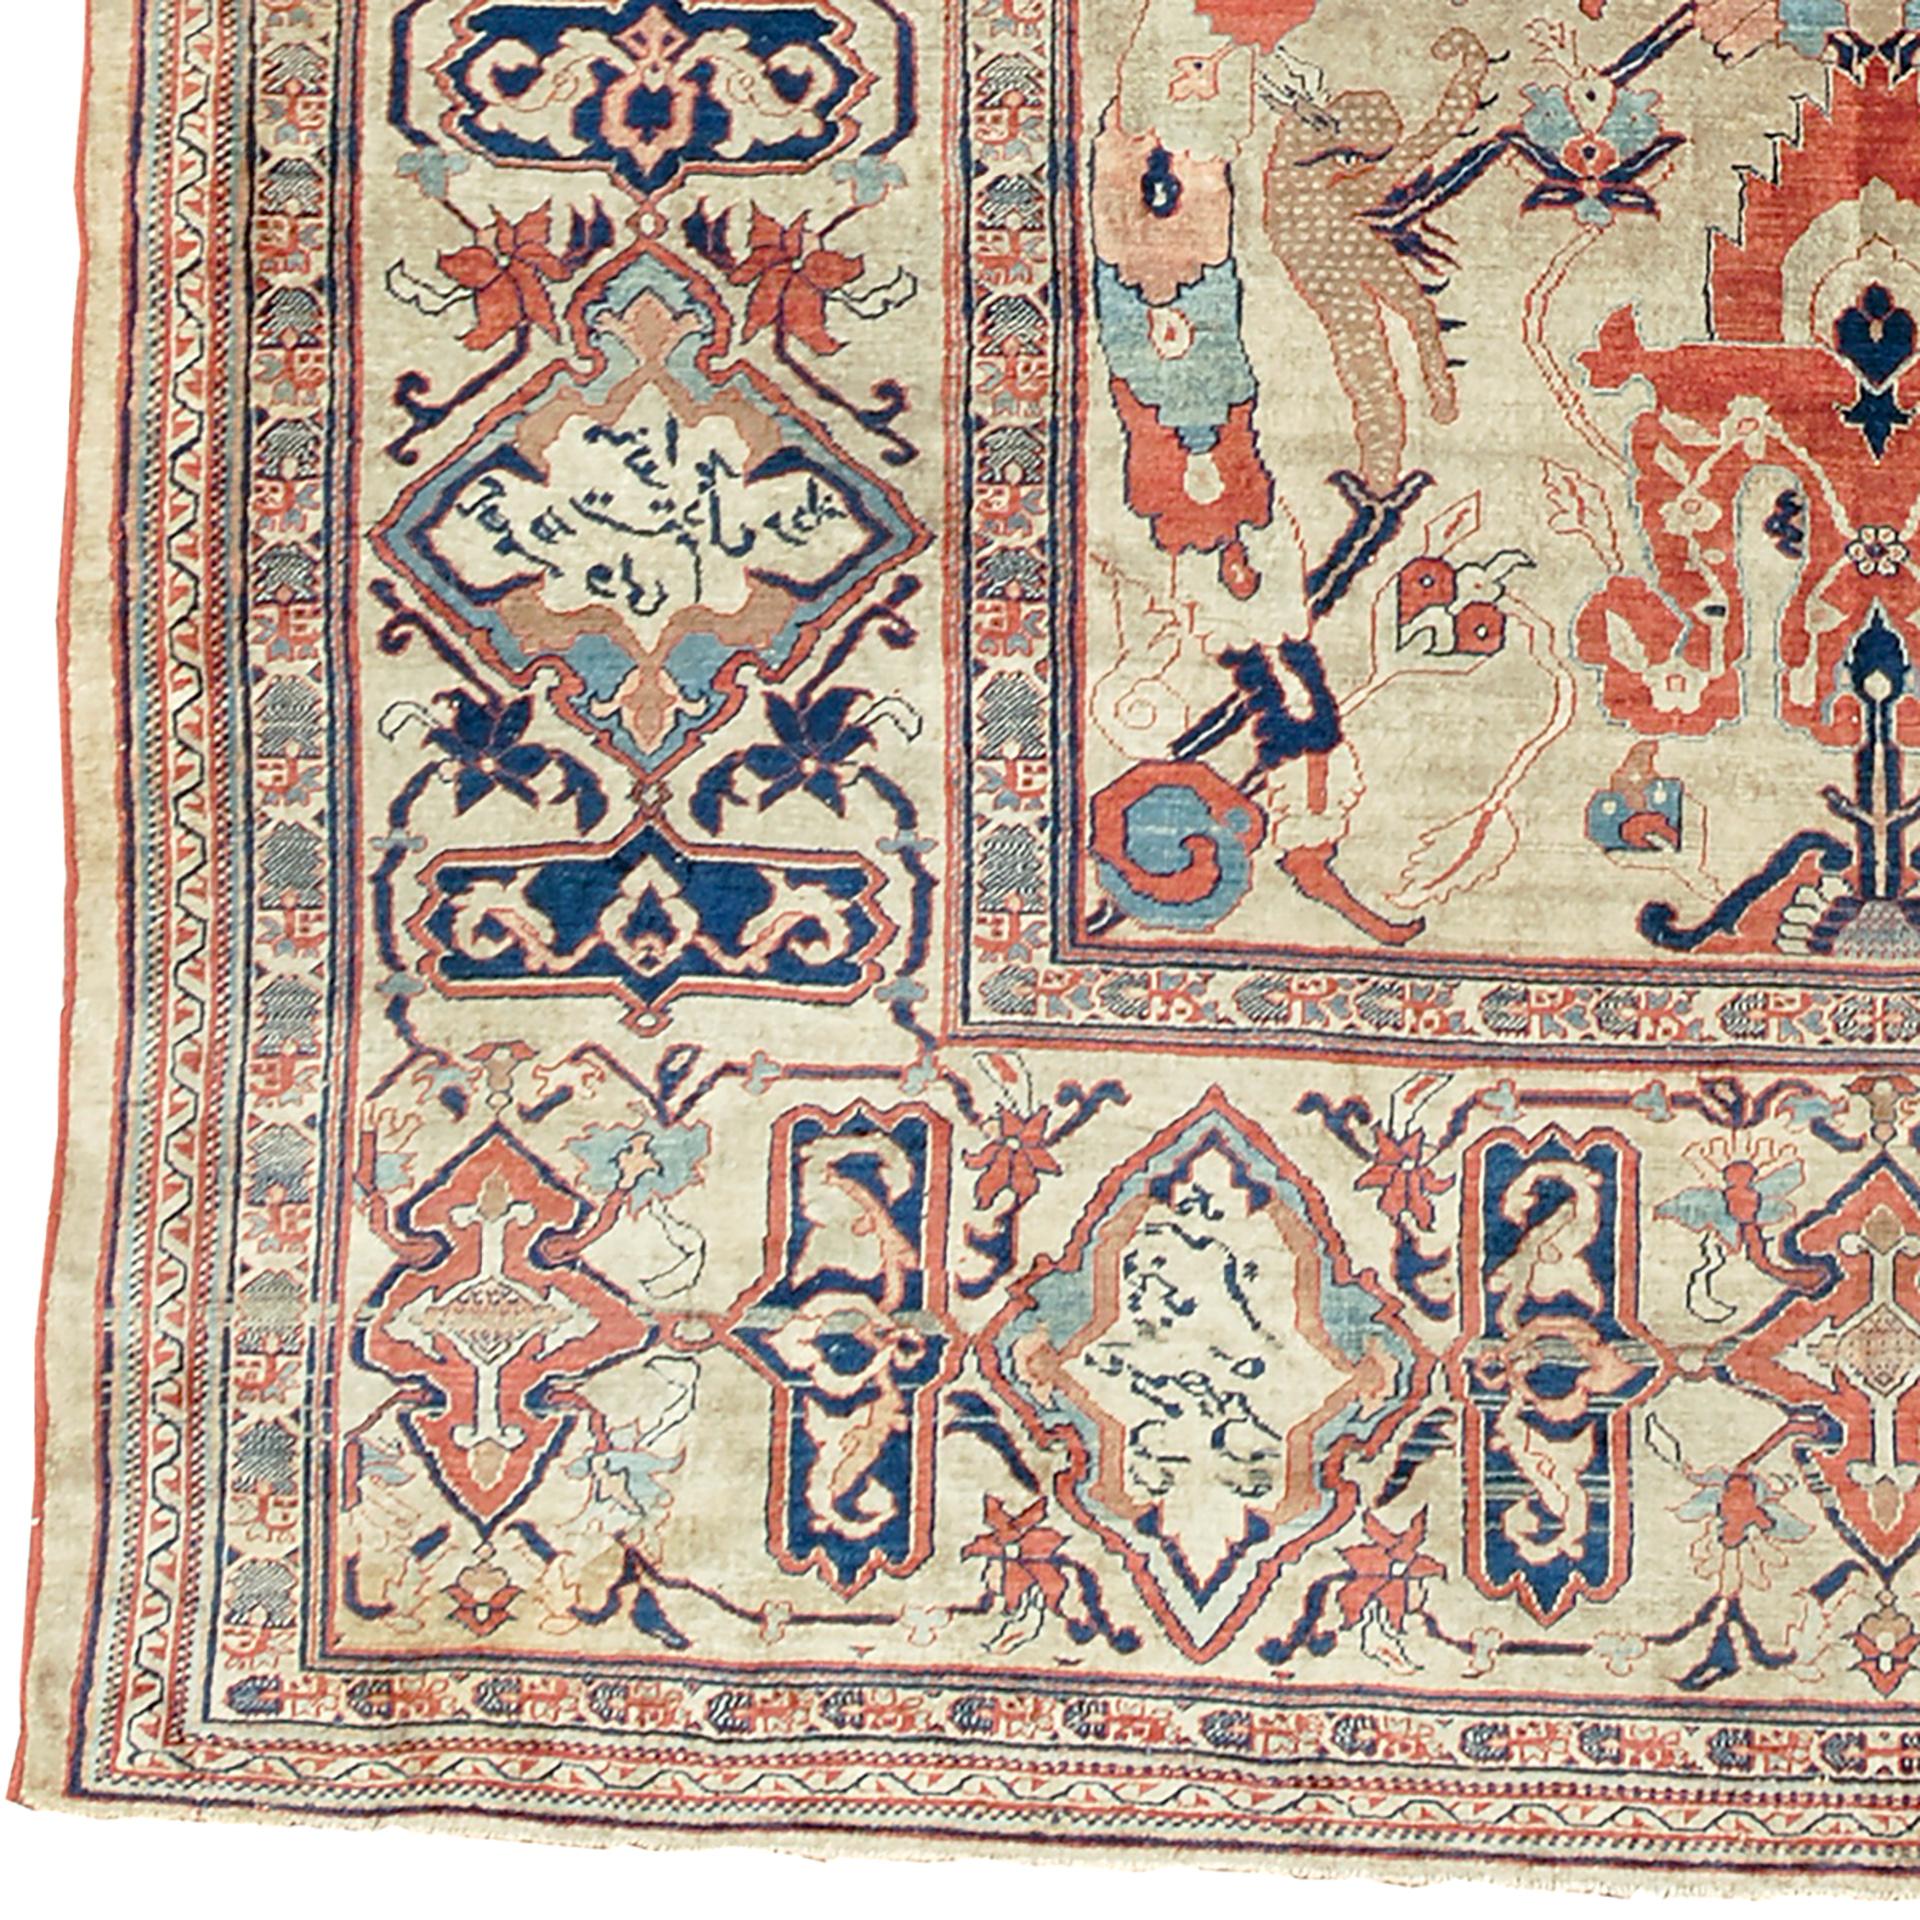 Antiker Heriz-Seidenteppich
Persien, um 1900.
Handgewebt
6'1